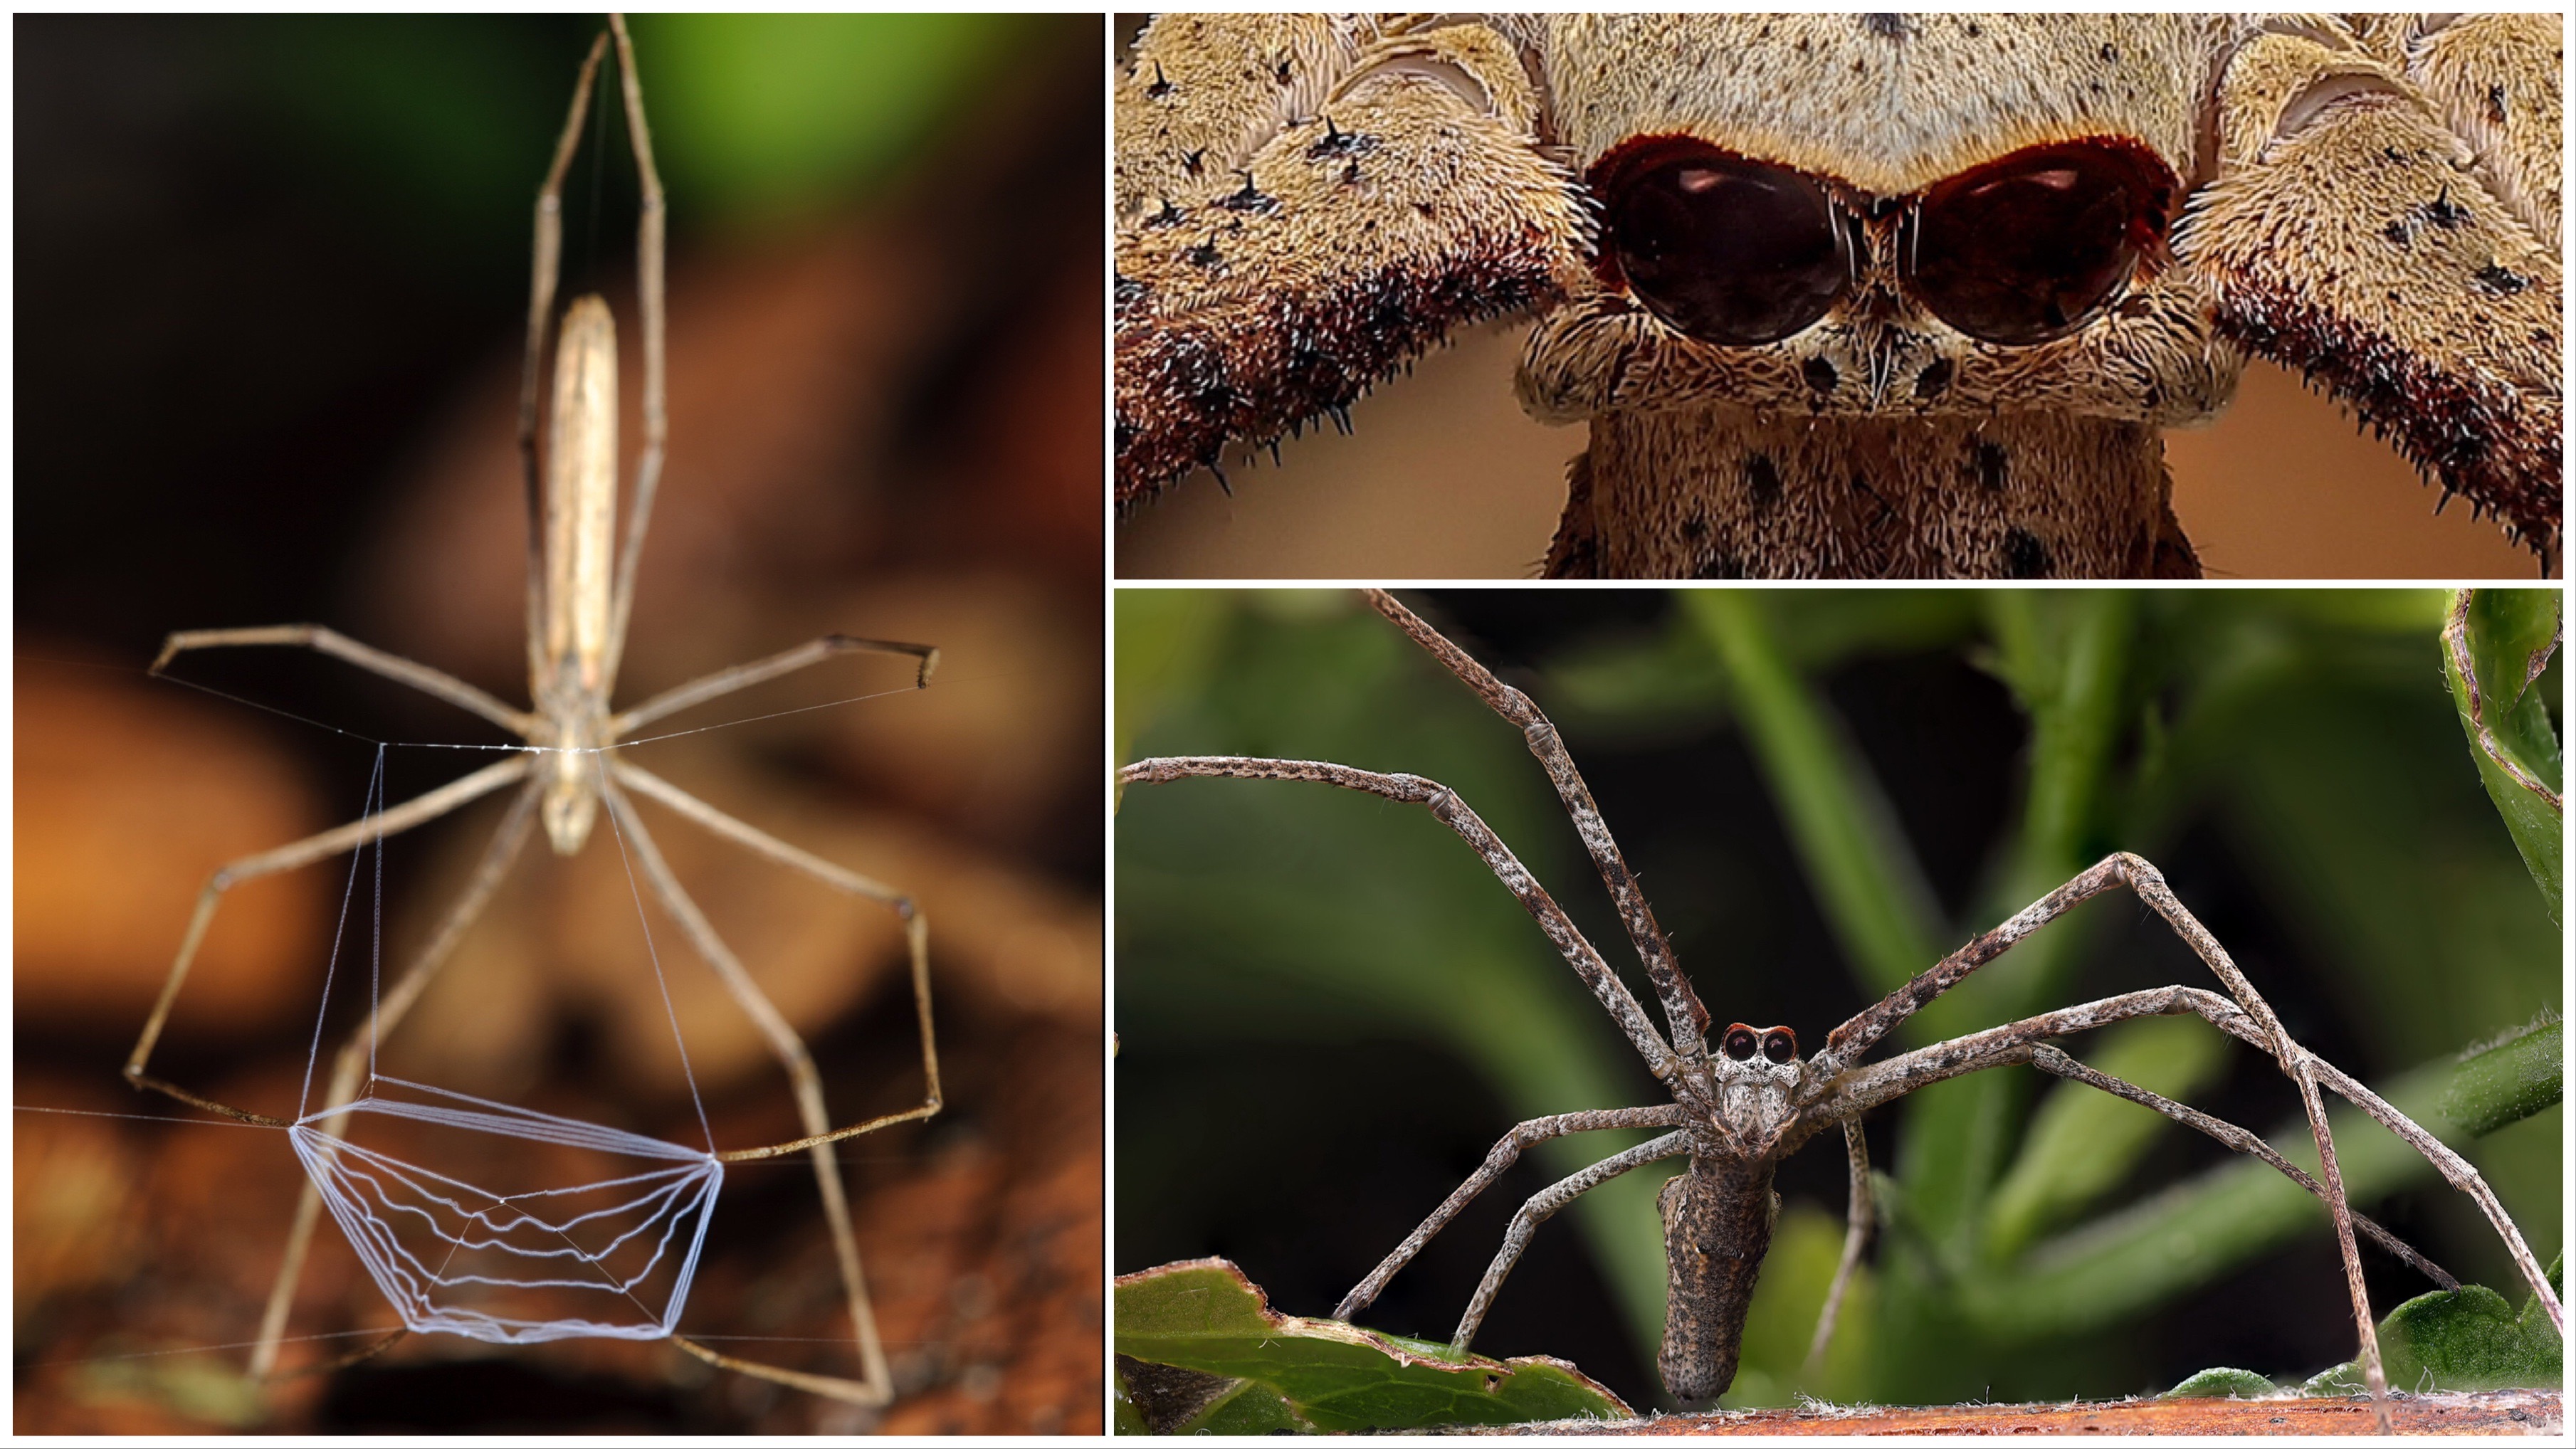 Az ogrearcú pókok nem várnak rá, hogy a hálójukba gabalyodjon a zsákmány: röptükben kapják el a legyeket, szúnyogokat és lepkéket.